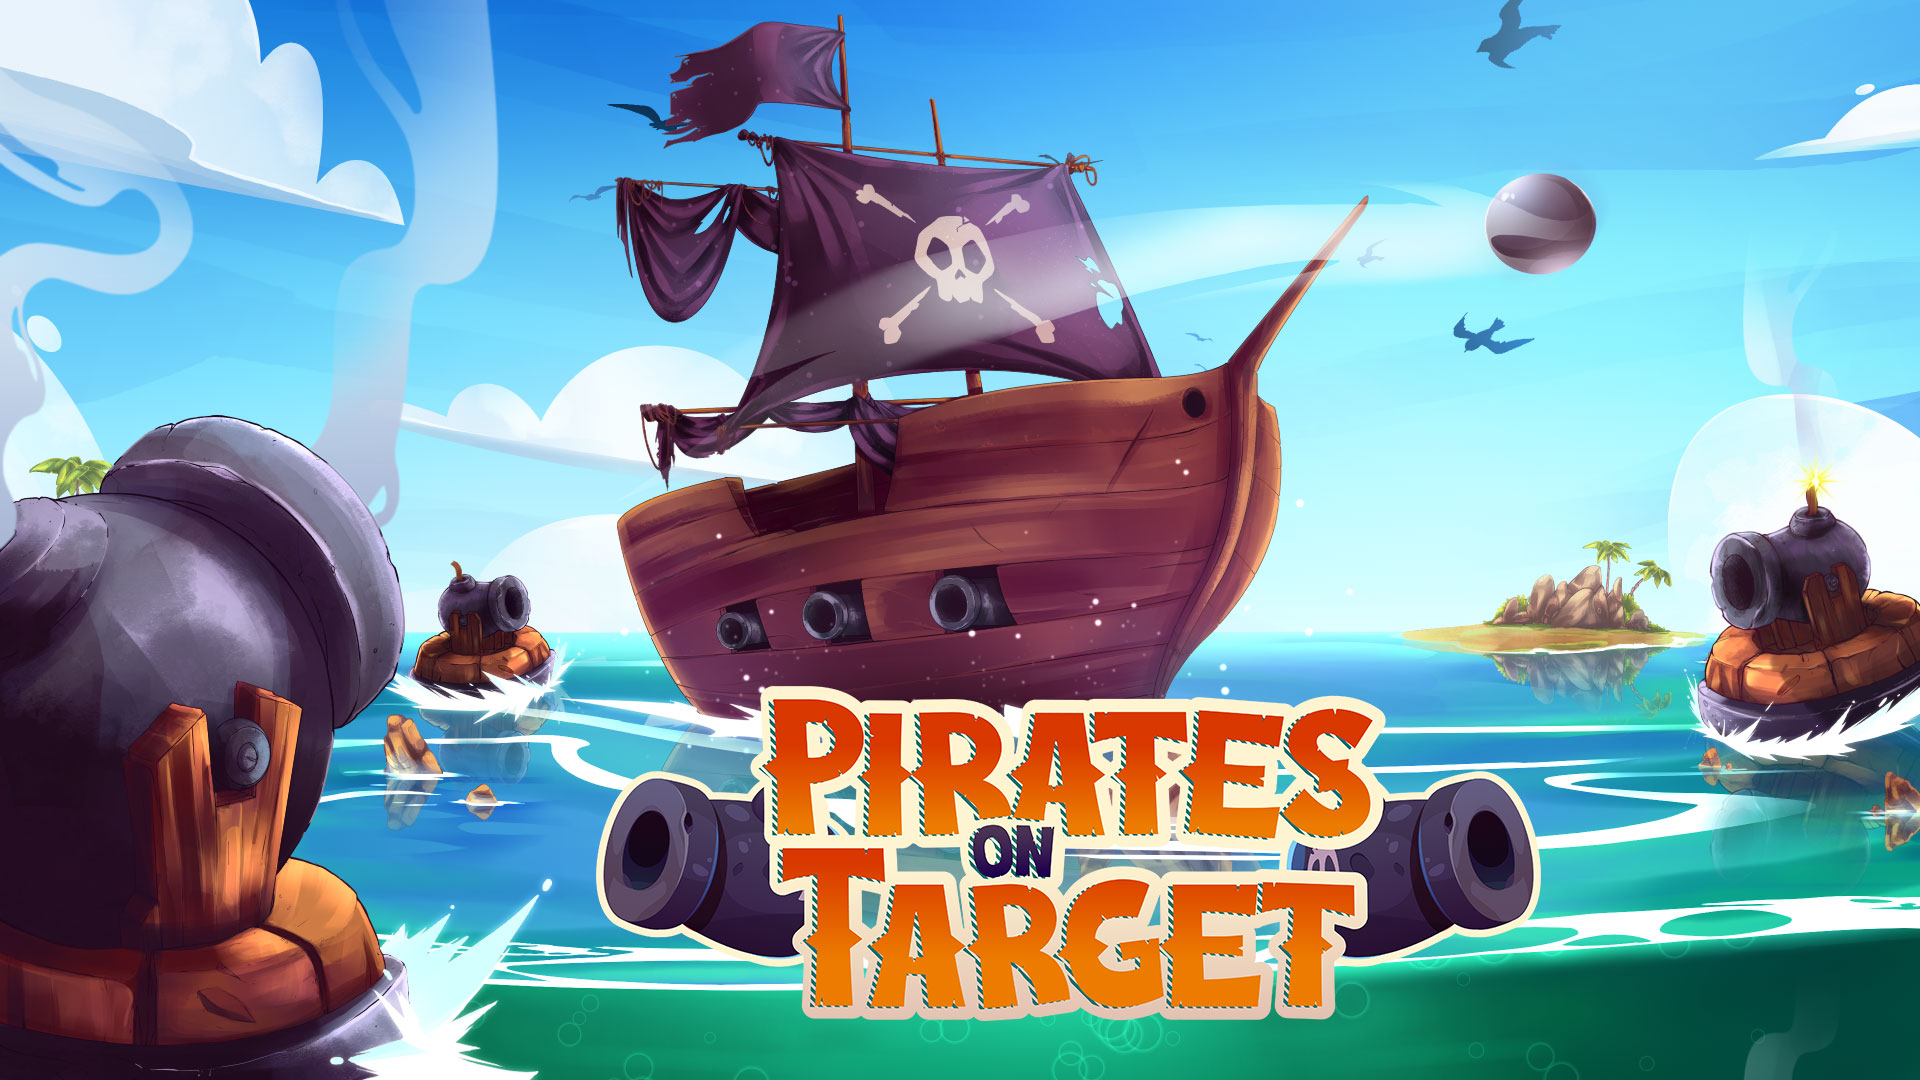 Pirates on Target